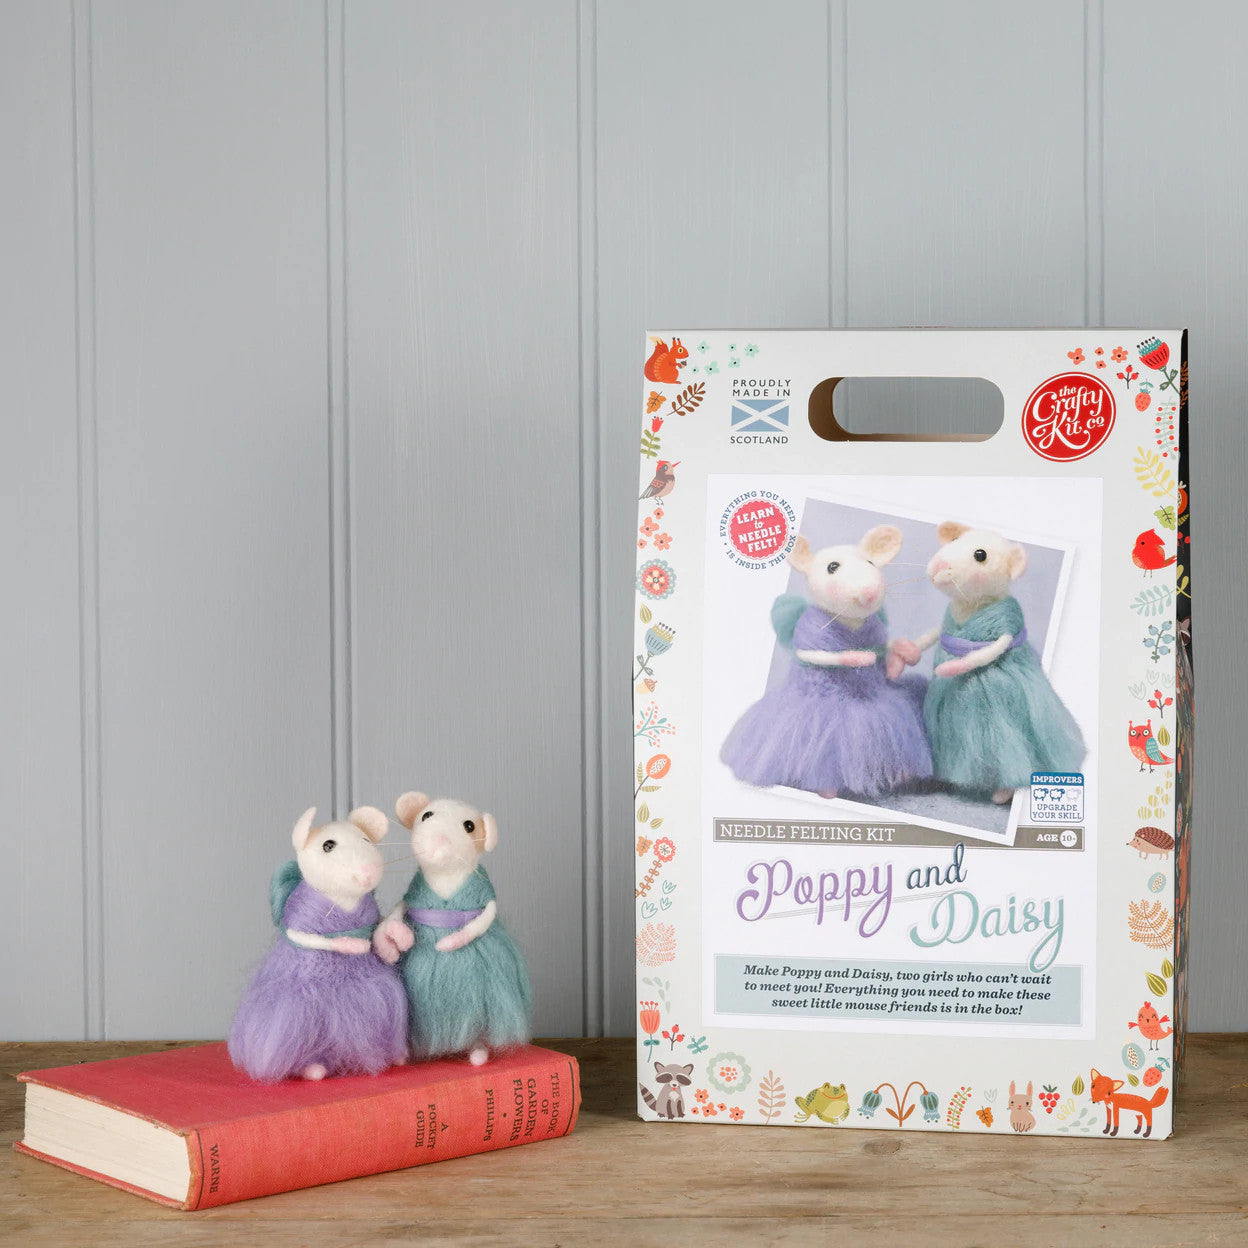 Poppy & Daisy Mice Needle Felting Kit from The Crafty Kit Co. Made in Scotland